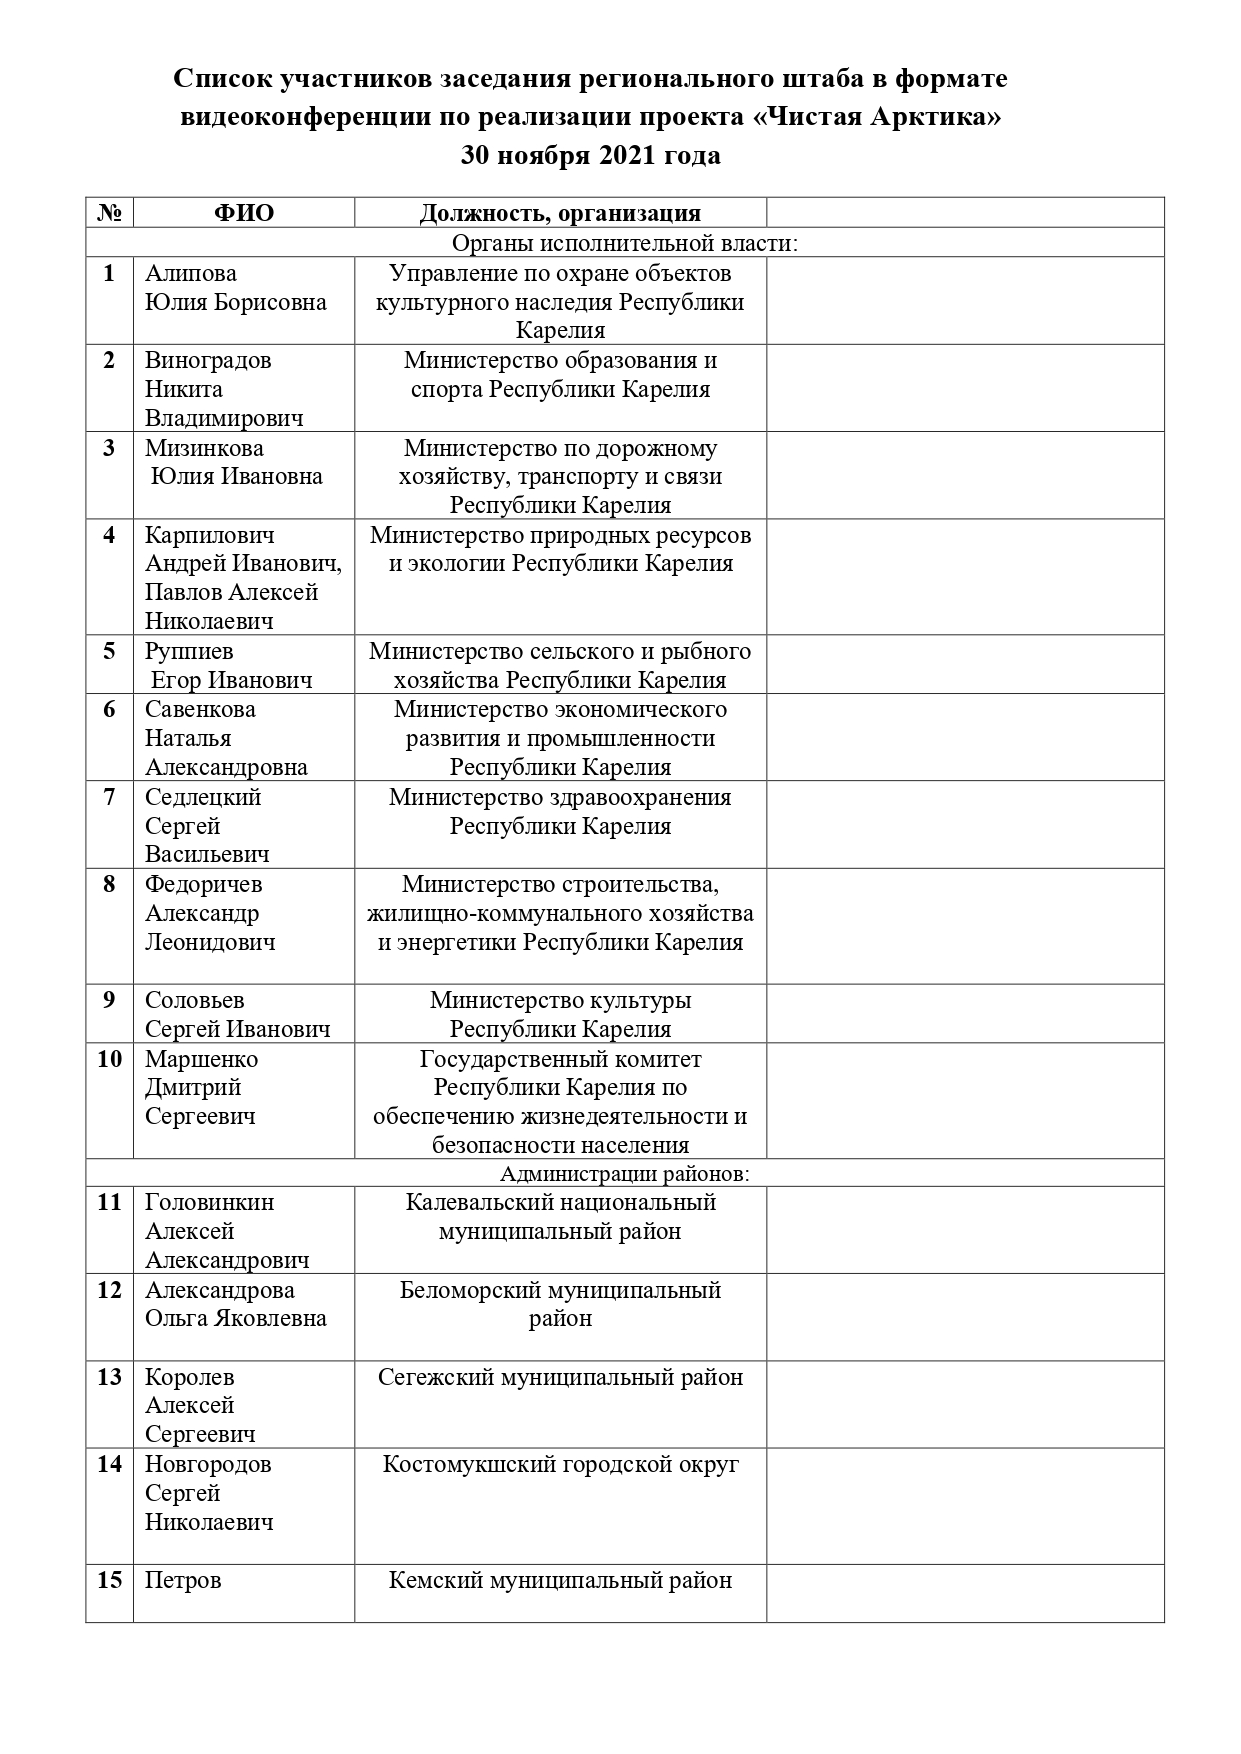 Список участников заседания регионального штаба_page-0001